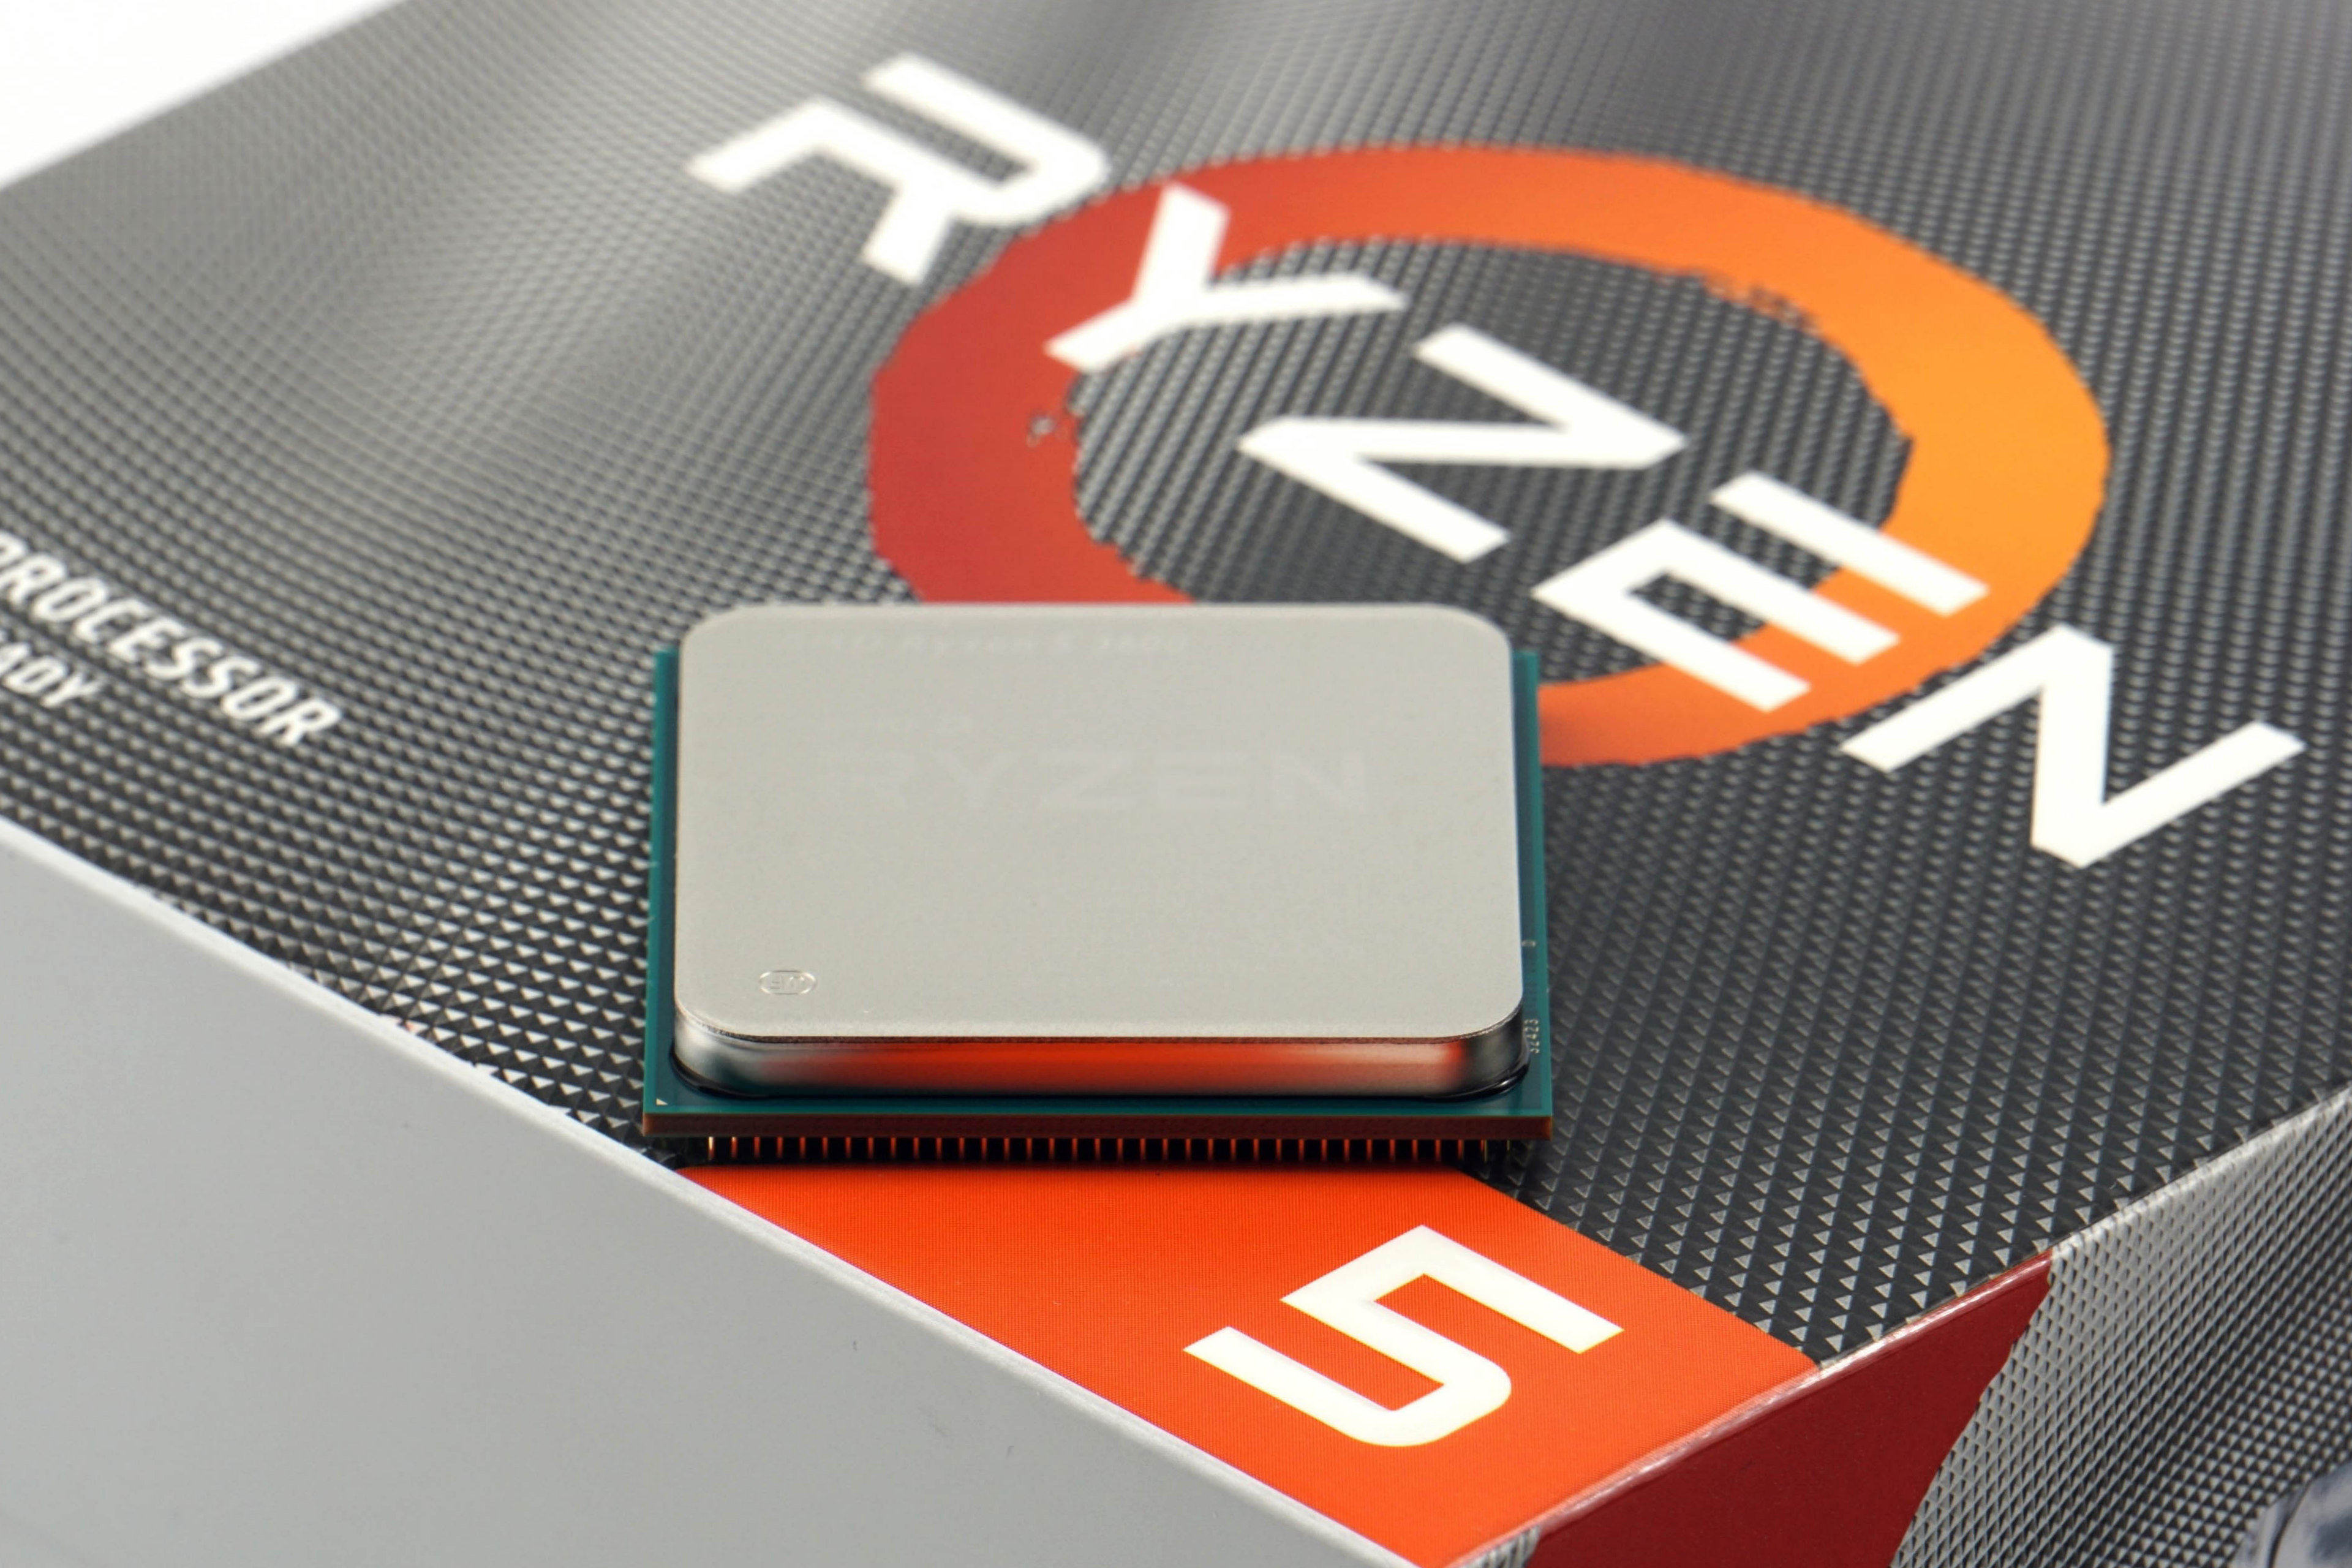 AMD 3600: Older bestseller head-to-head new CPUs - HWCooling.net